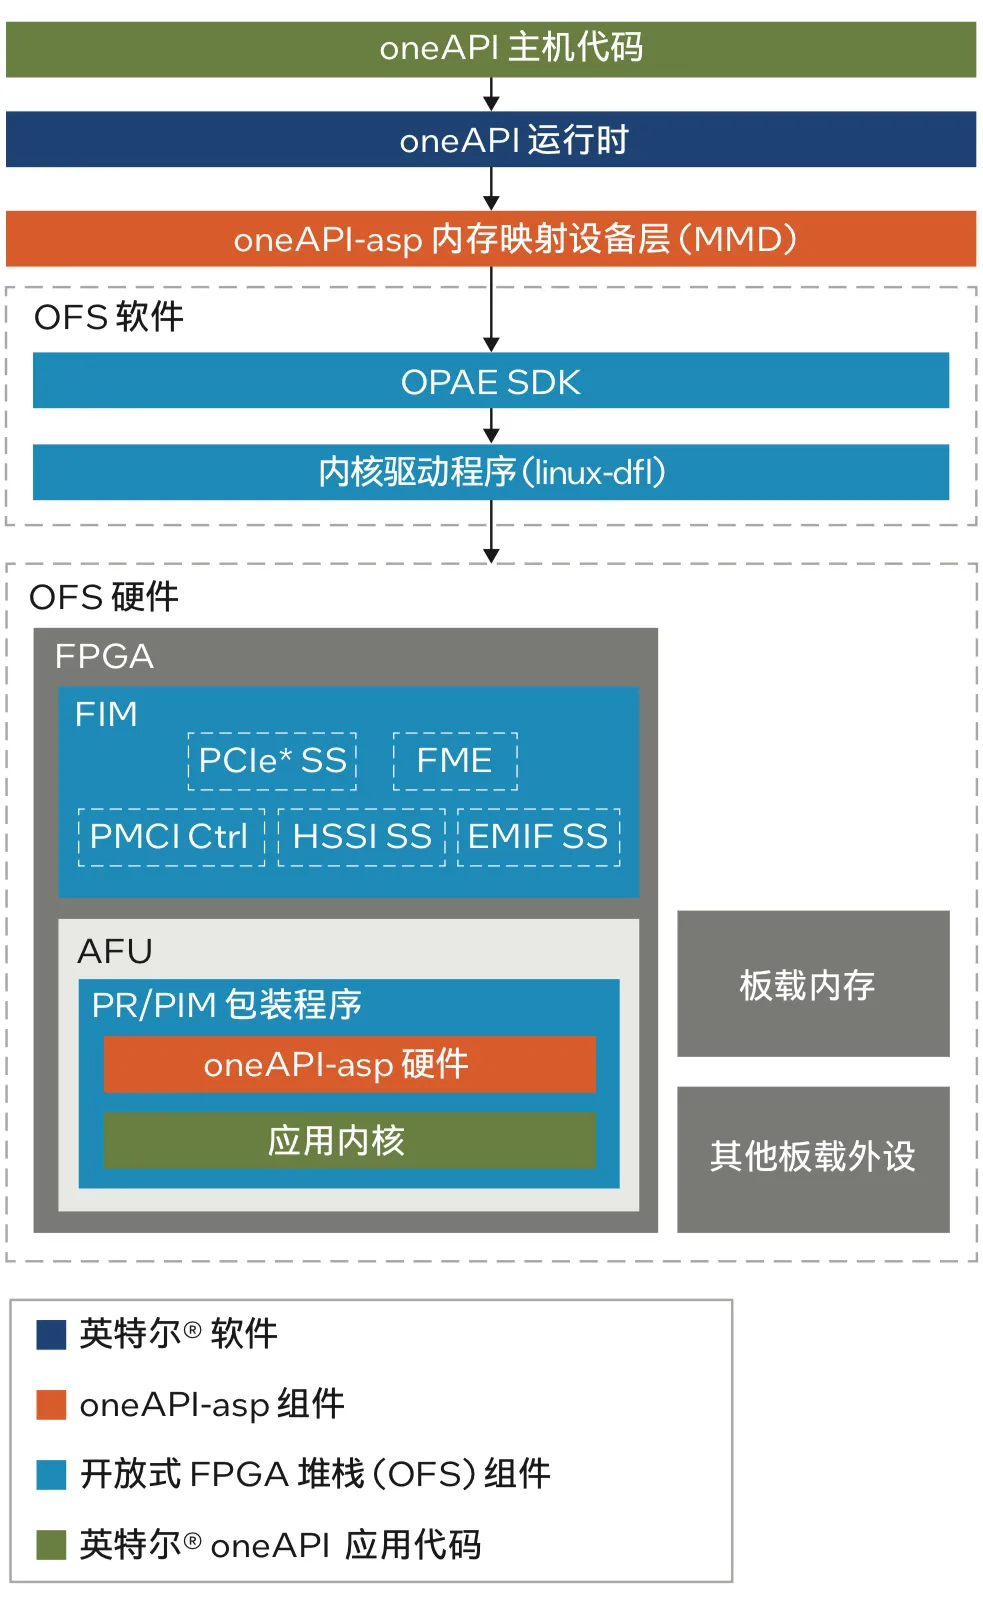 图 1. Blue OFS 组件与 oneAPI HLD 工具集成.png